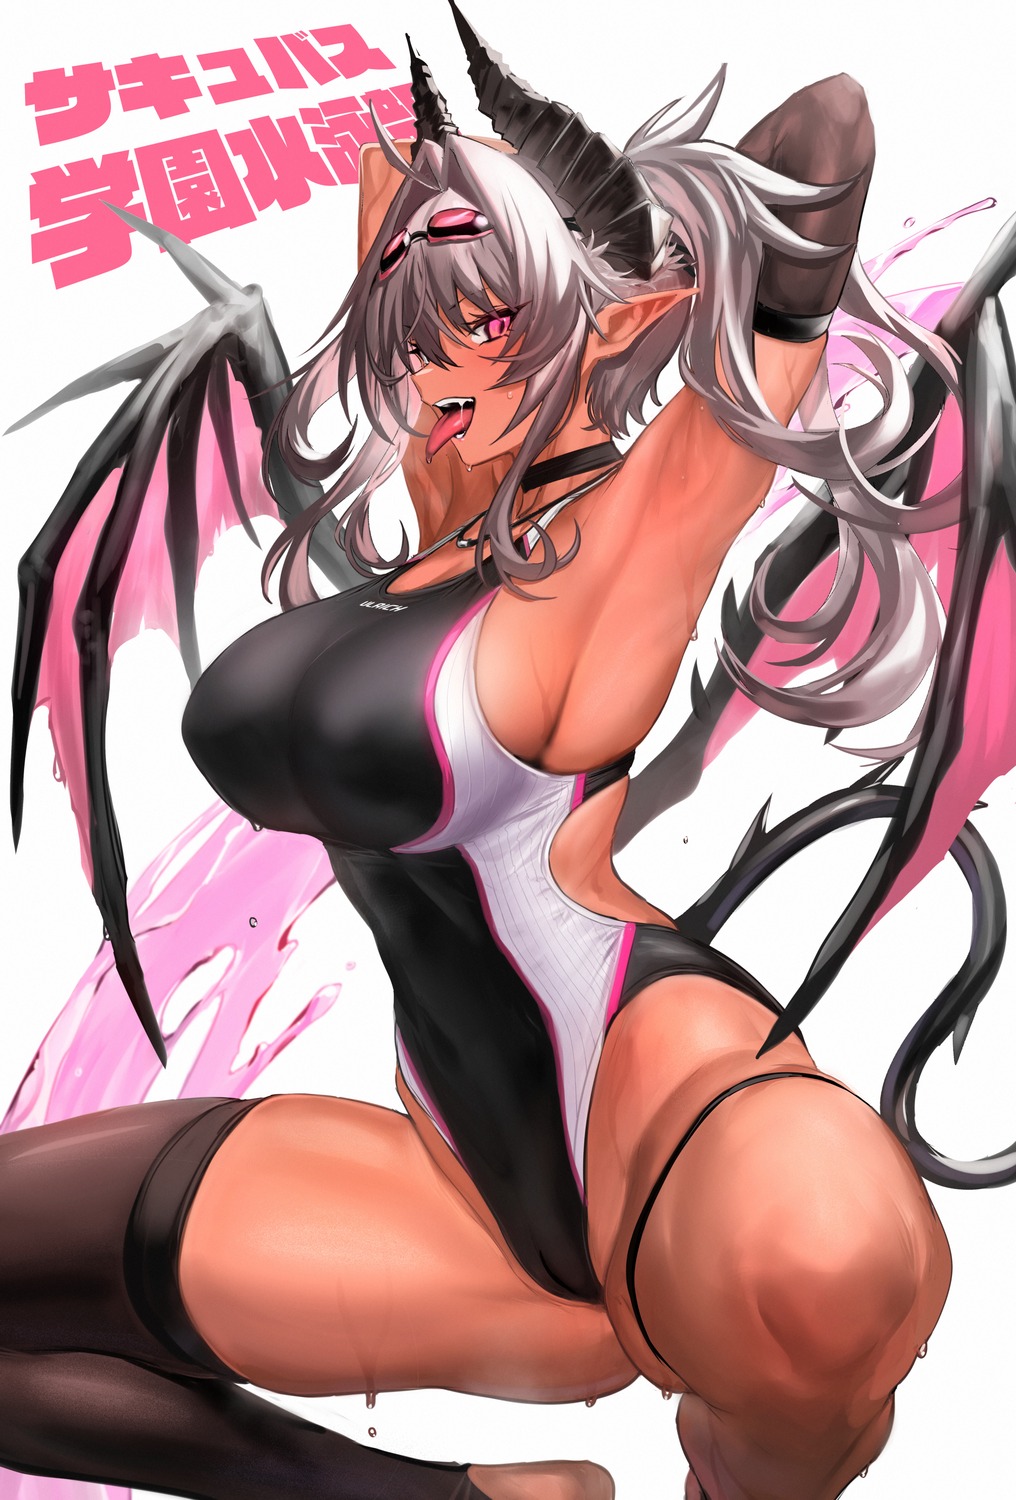 Anime 1016x1500 anime anime girls big boobs spread legs cameltoe one-piece swimsuit demon girls dark skin artwork Ulrich